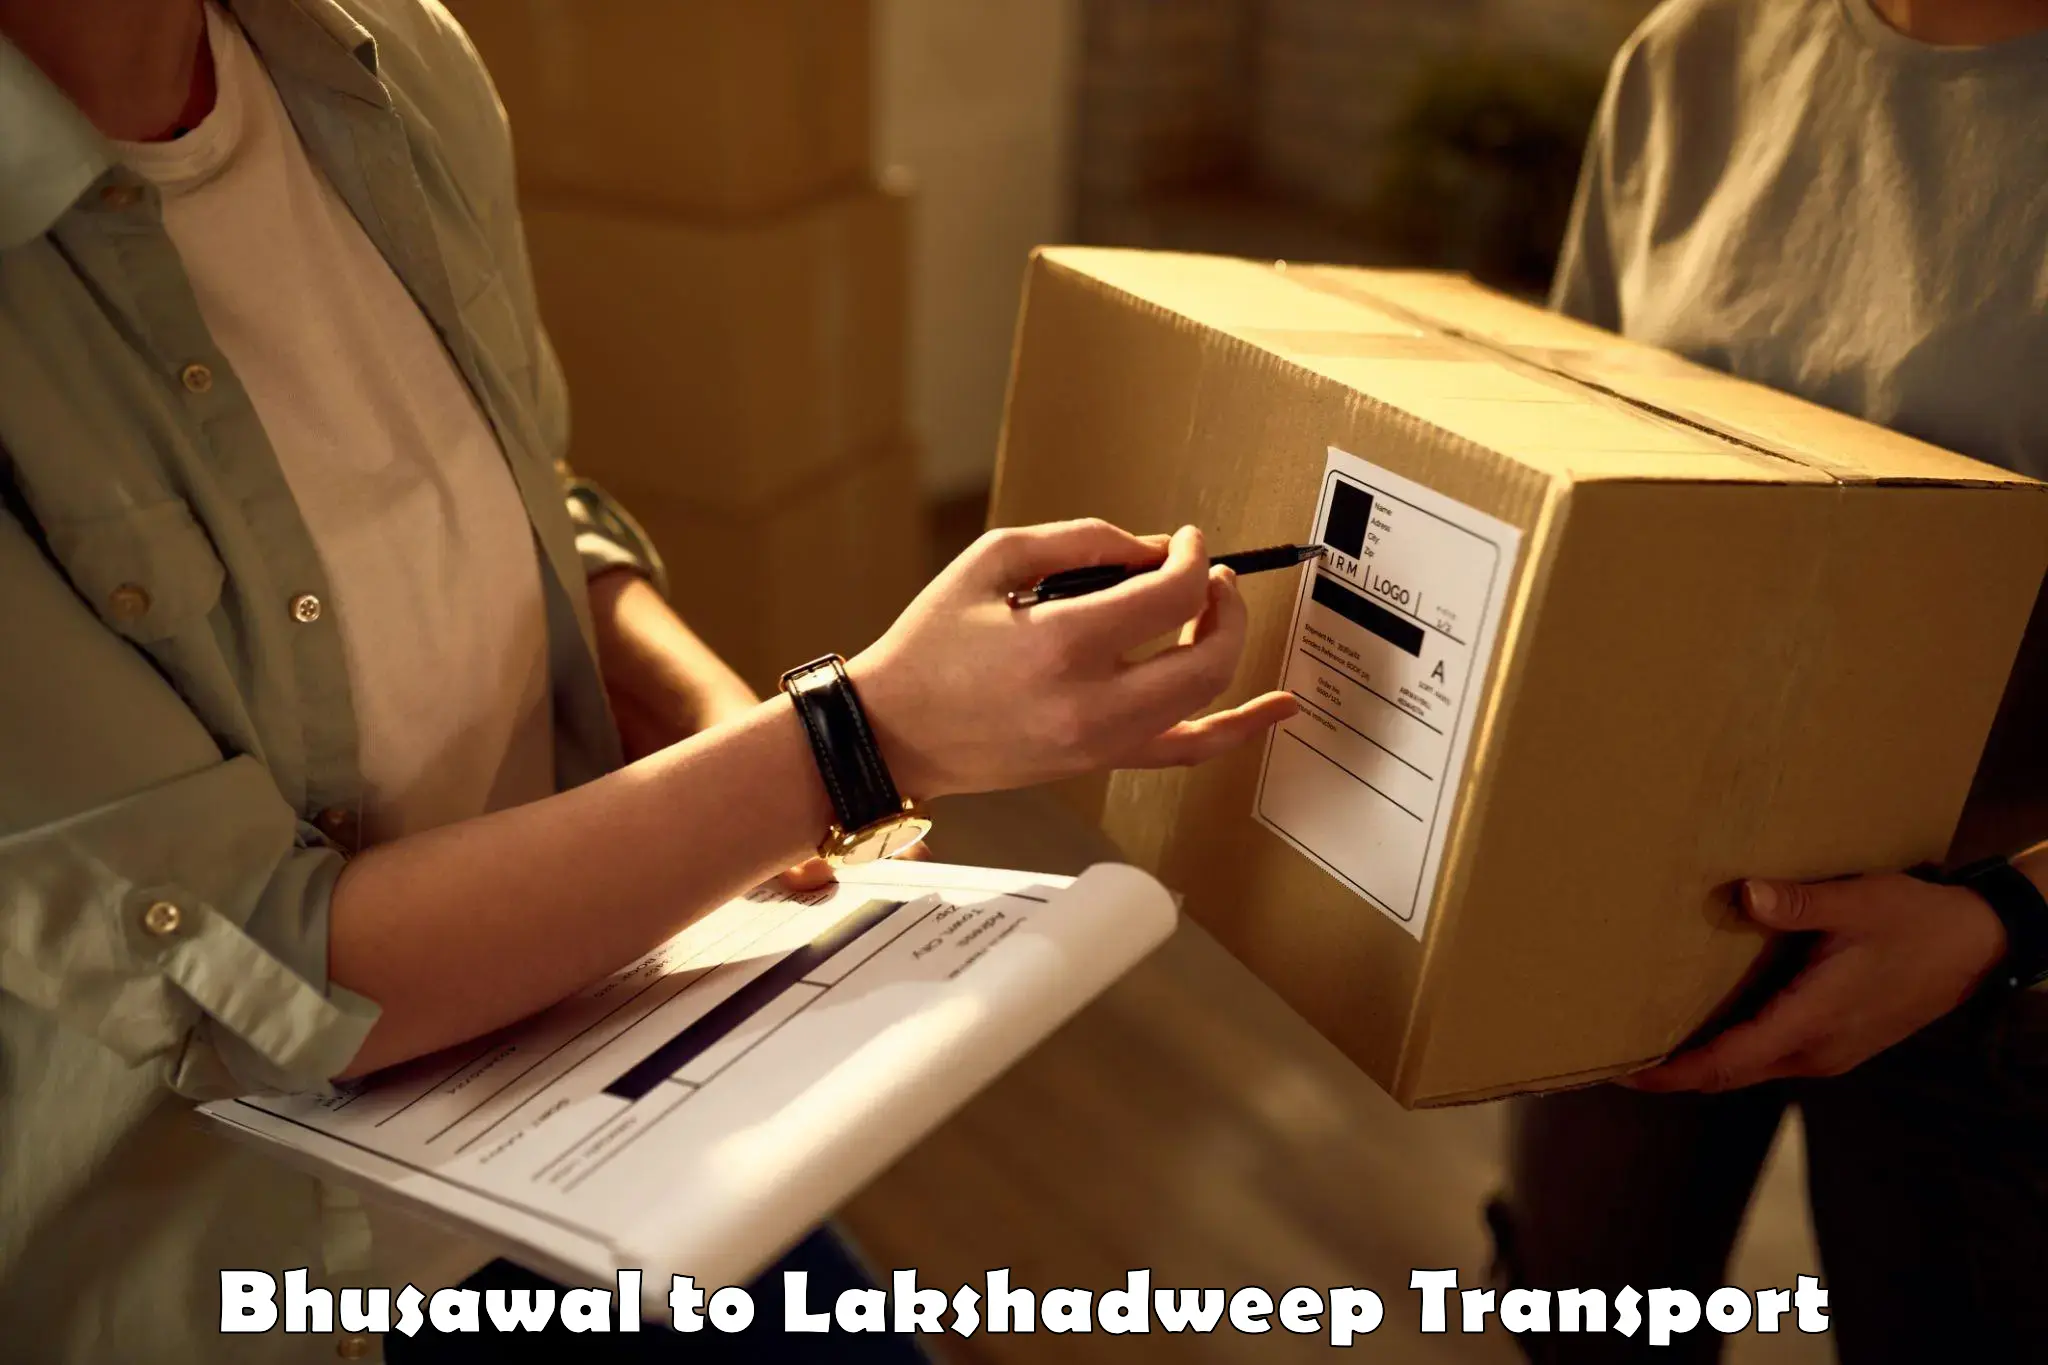 Daily transport service Bhusawal to Lakshadweep